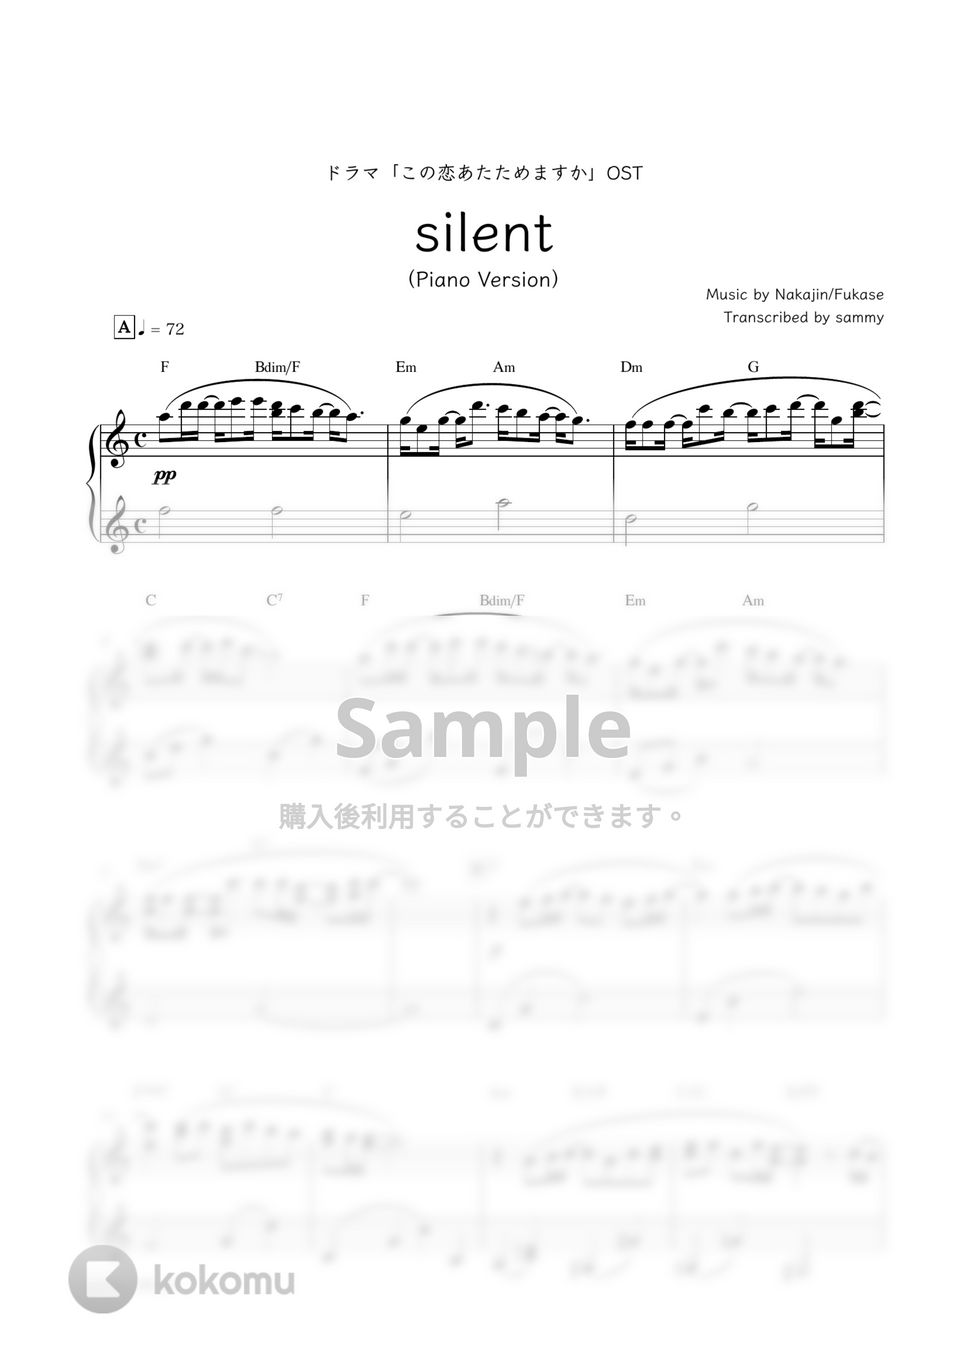 SAKAI NO OWARI - silent (ドラマ『この恋あたためますか』劇中で流れるPf ver. -) by sammy